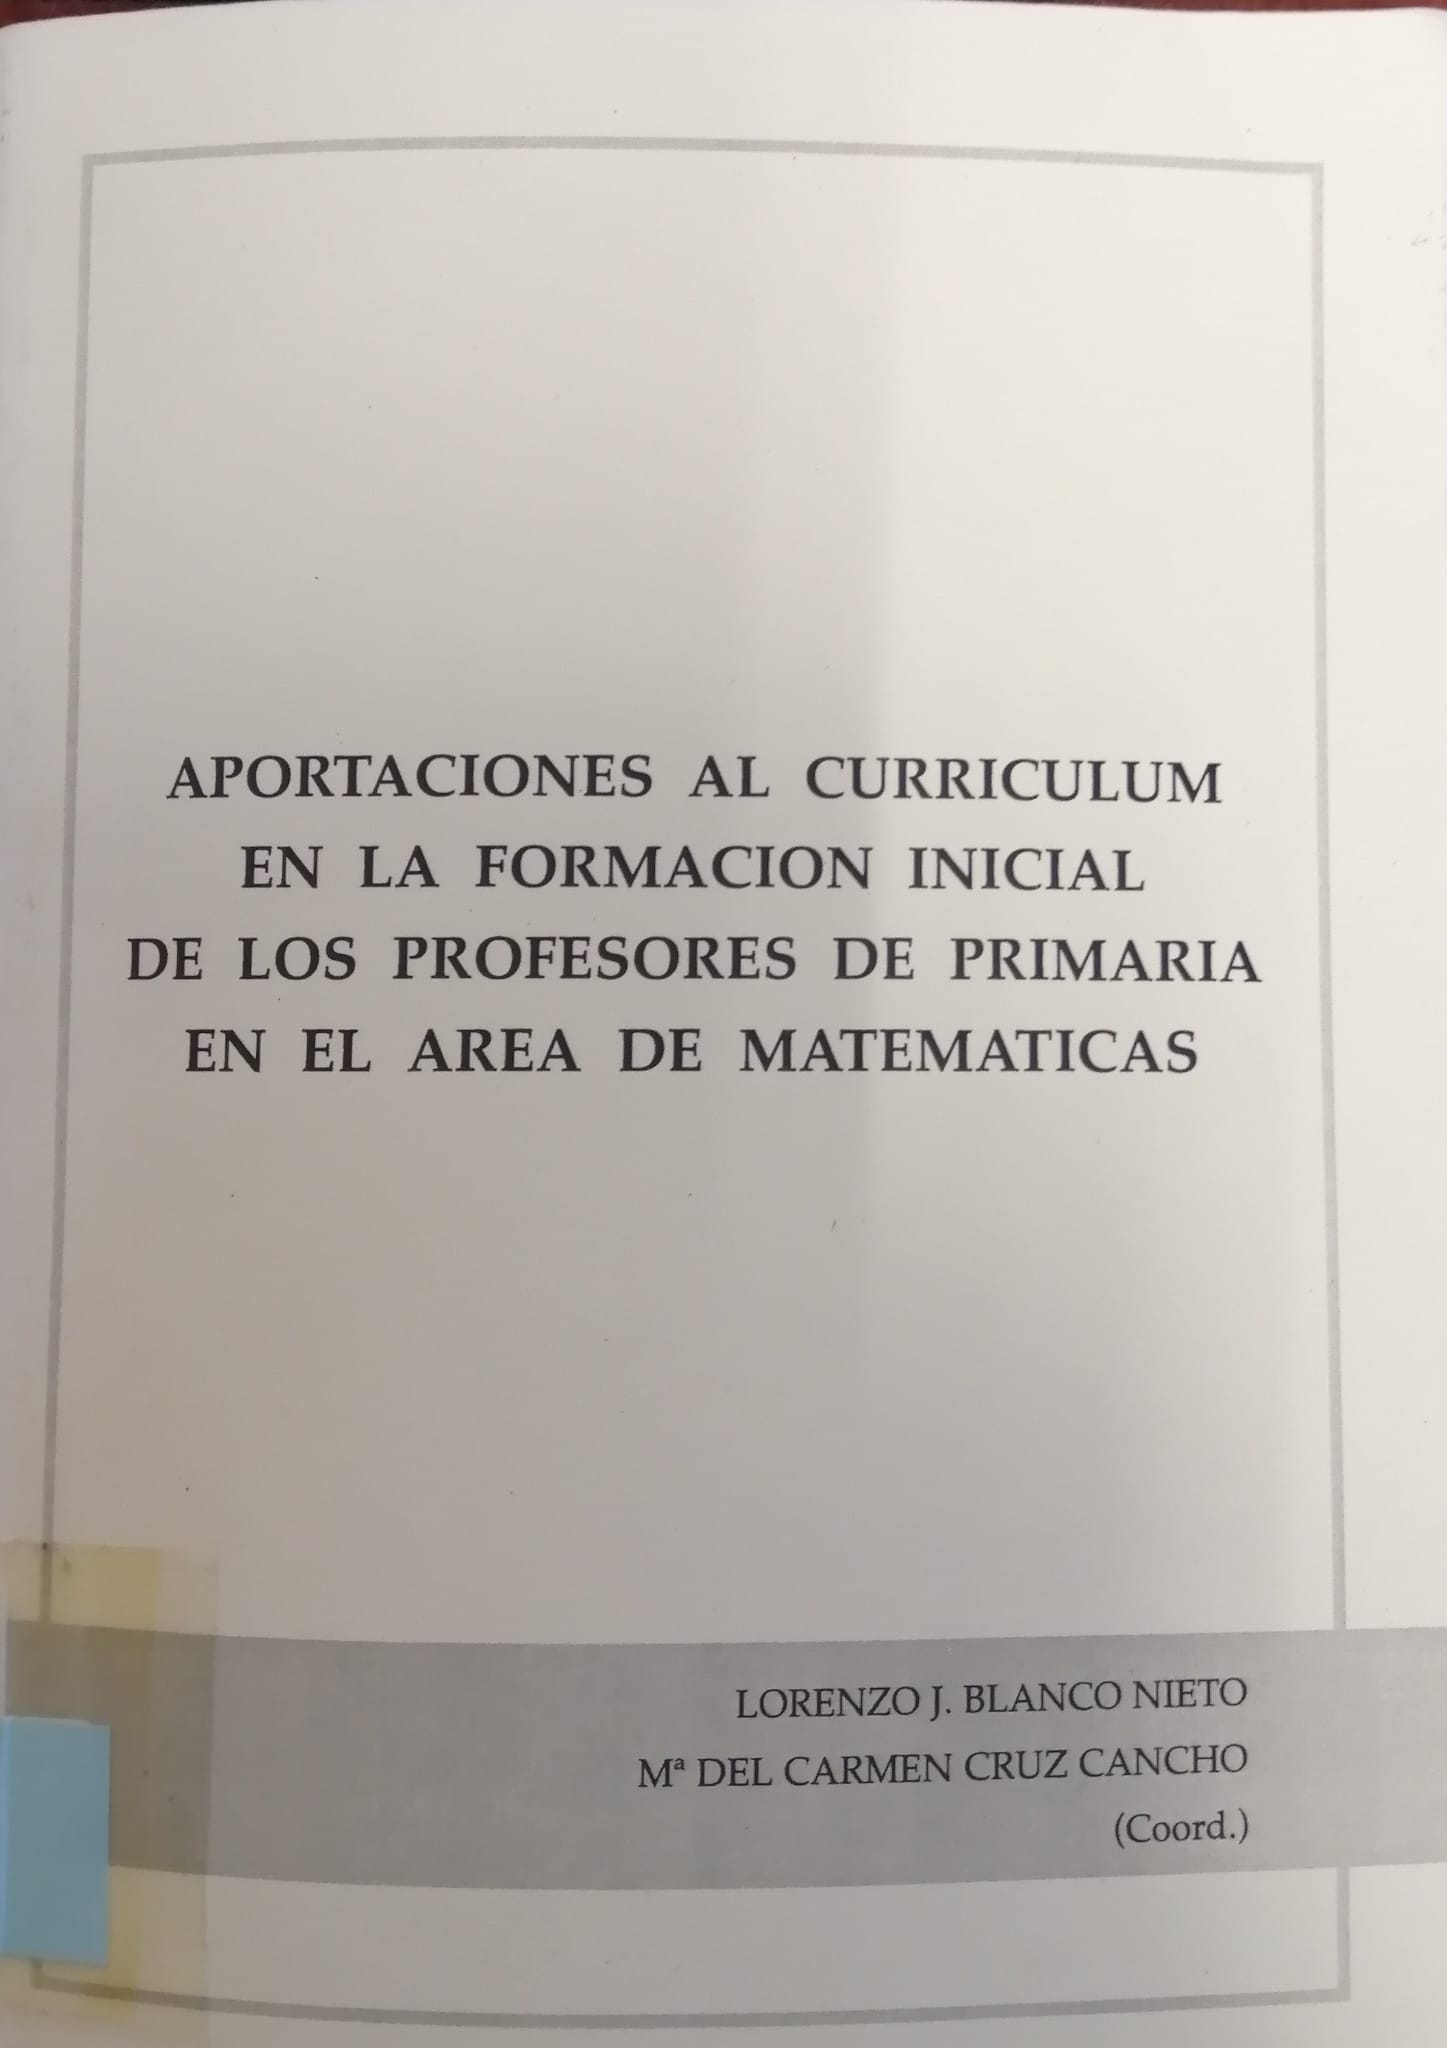 Imagen de portada del libro Aportaciones al currículum en la Formación Inicial de los Profesores de Primaria en el Área de Matemáticas